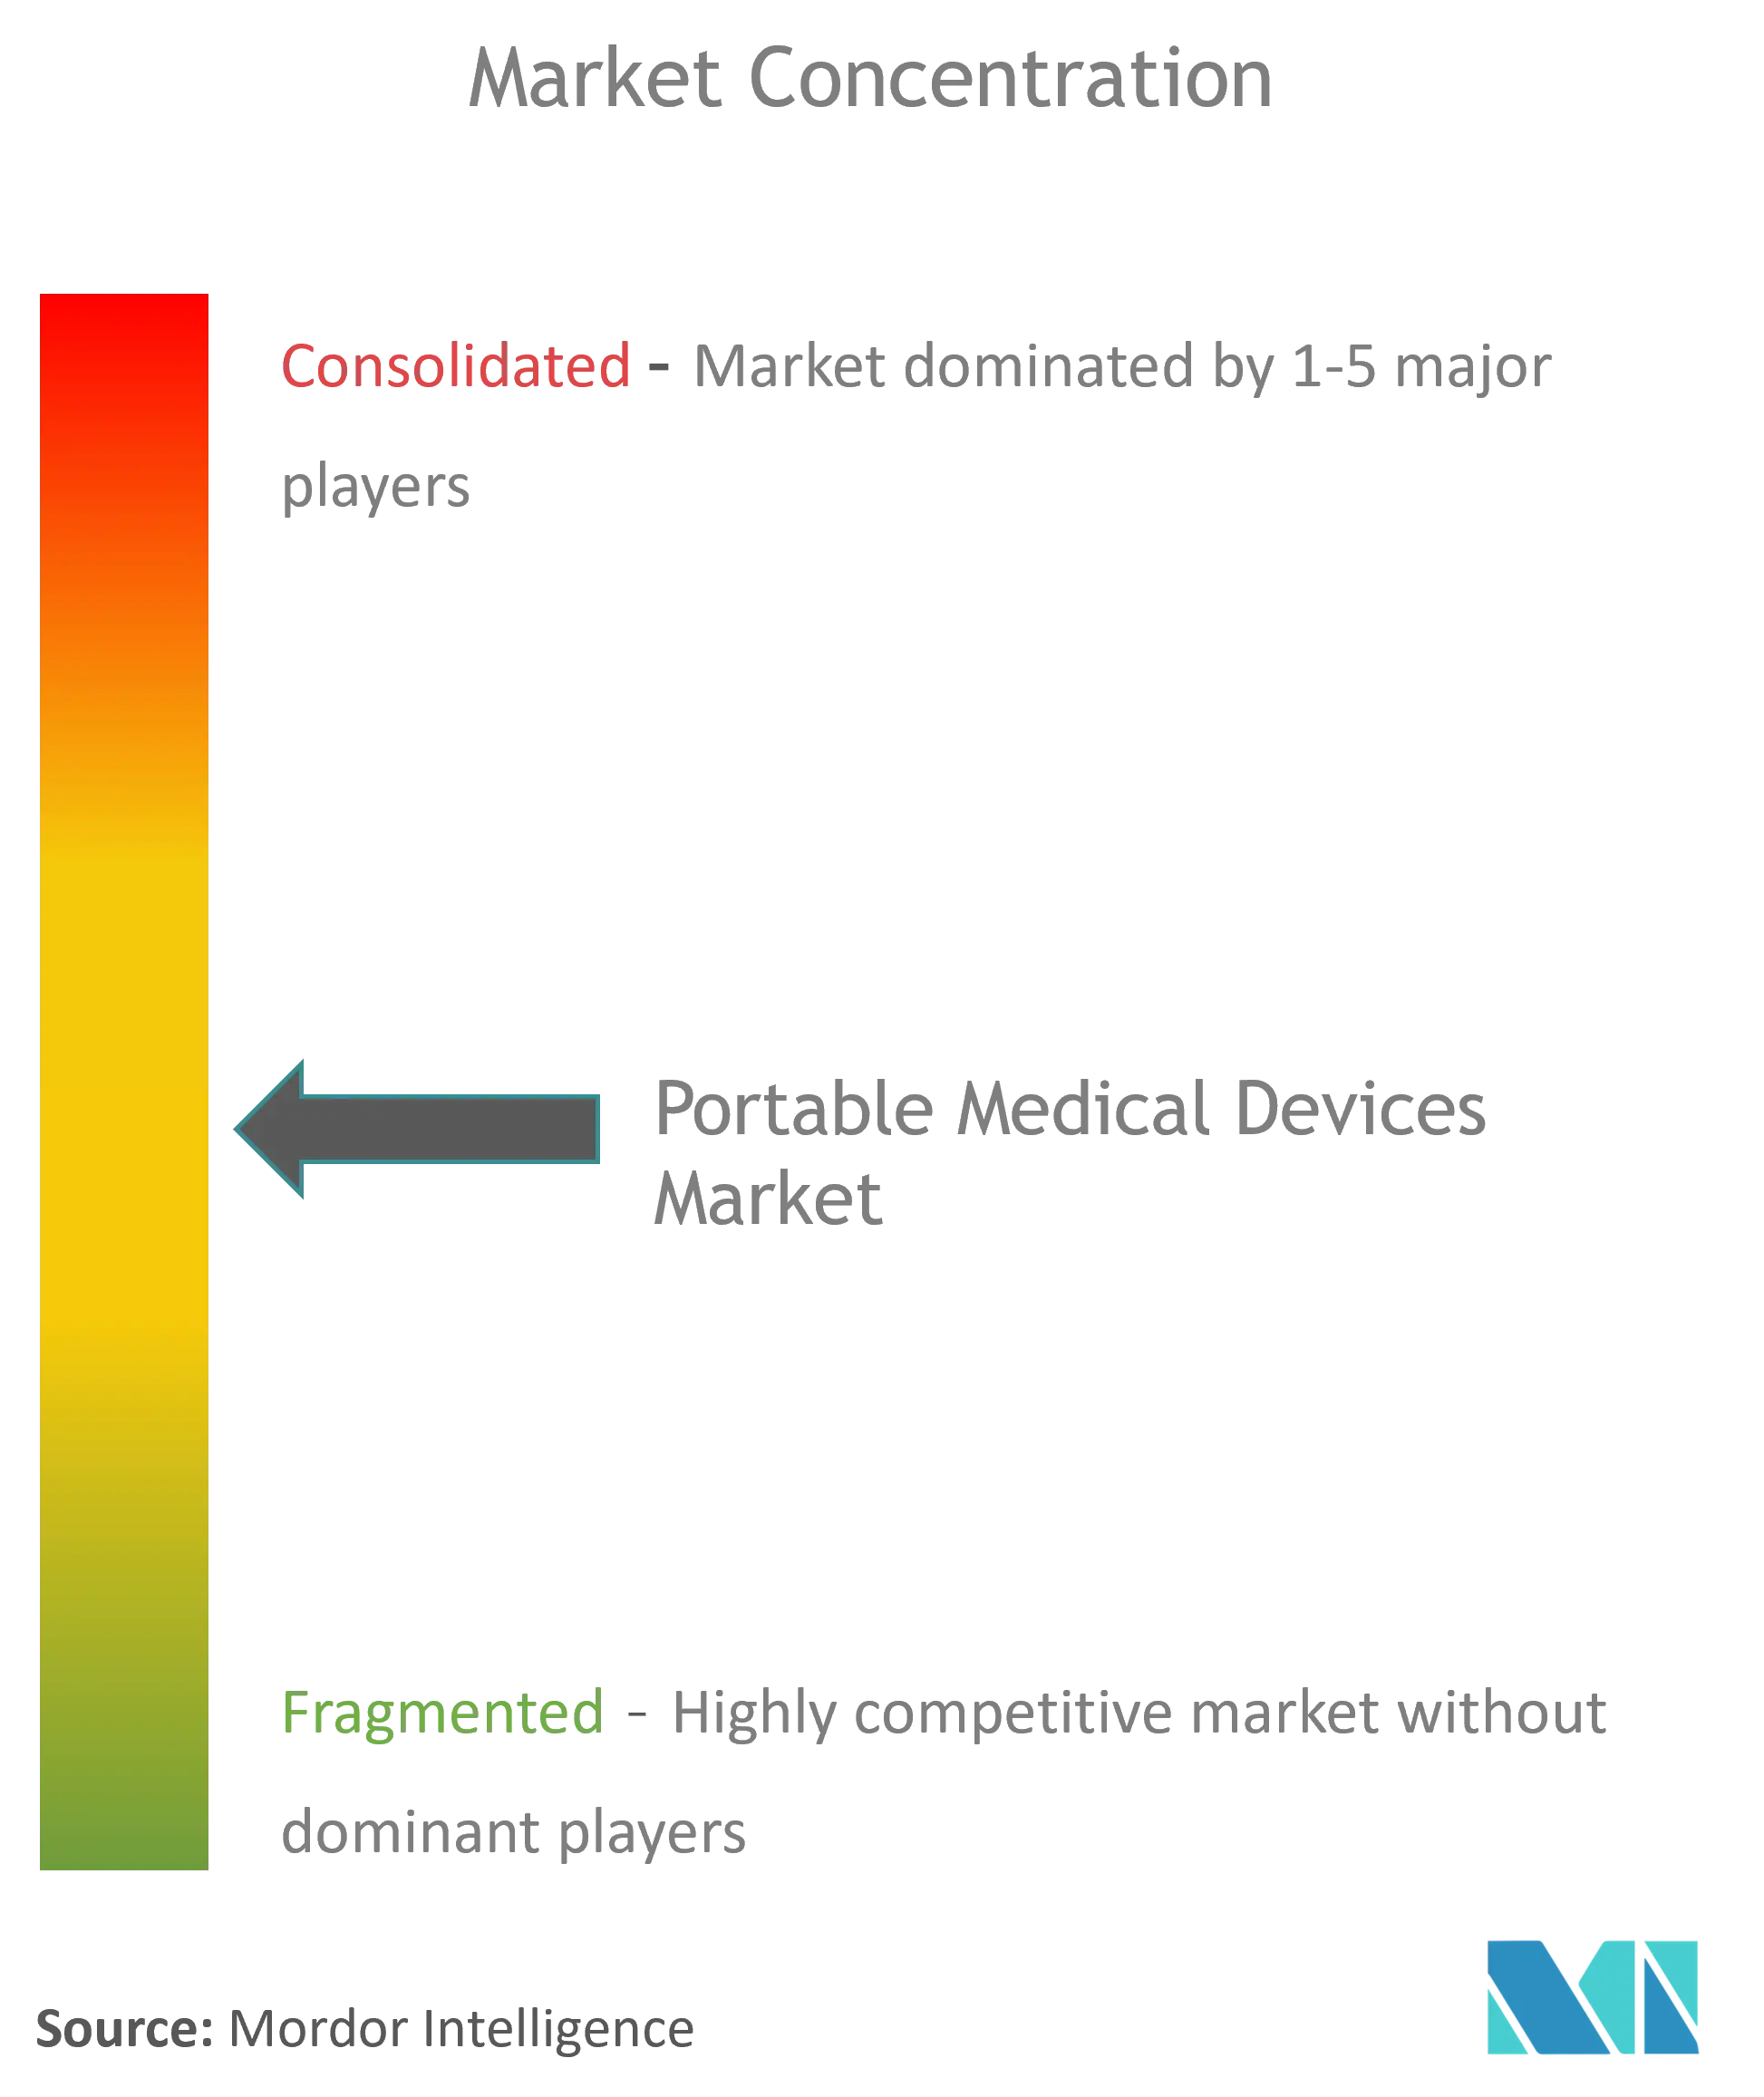 Dispositivos médicos portátilesConcentración del Mercado